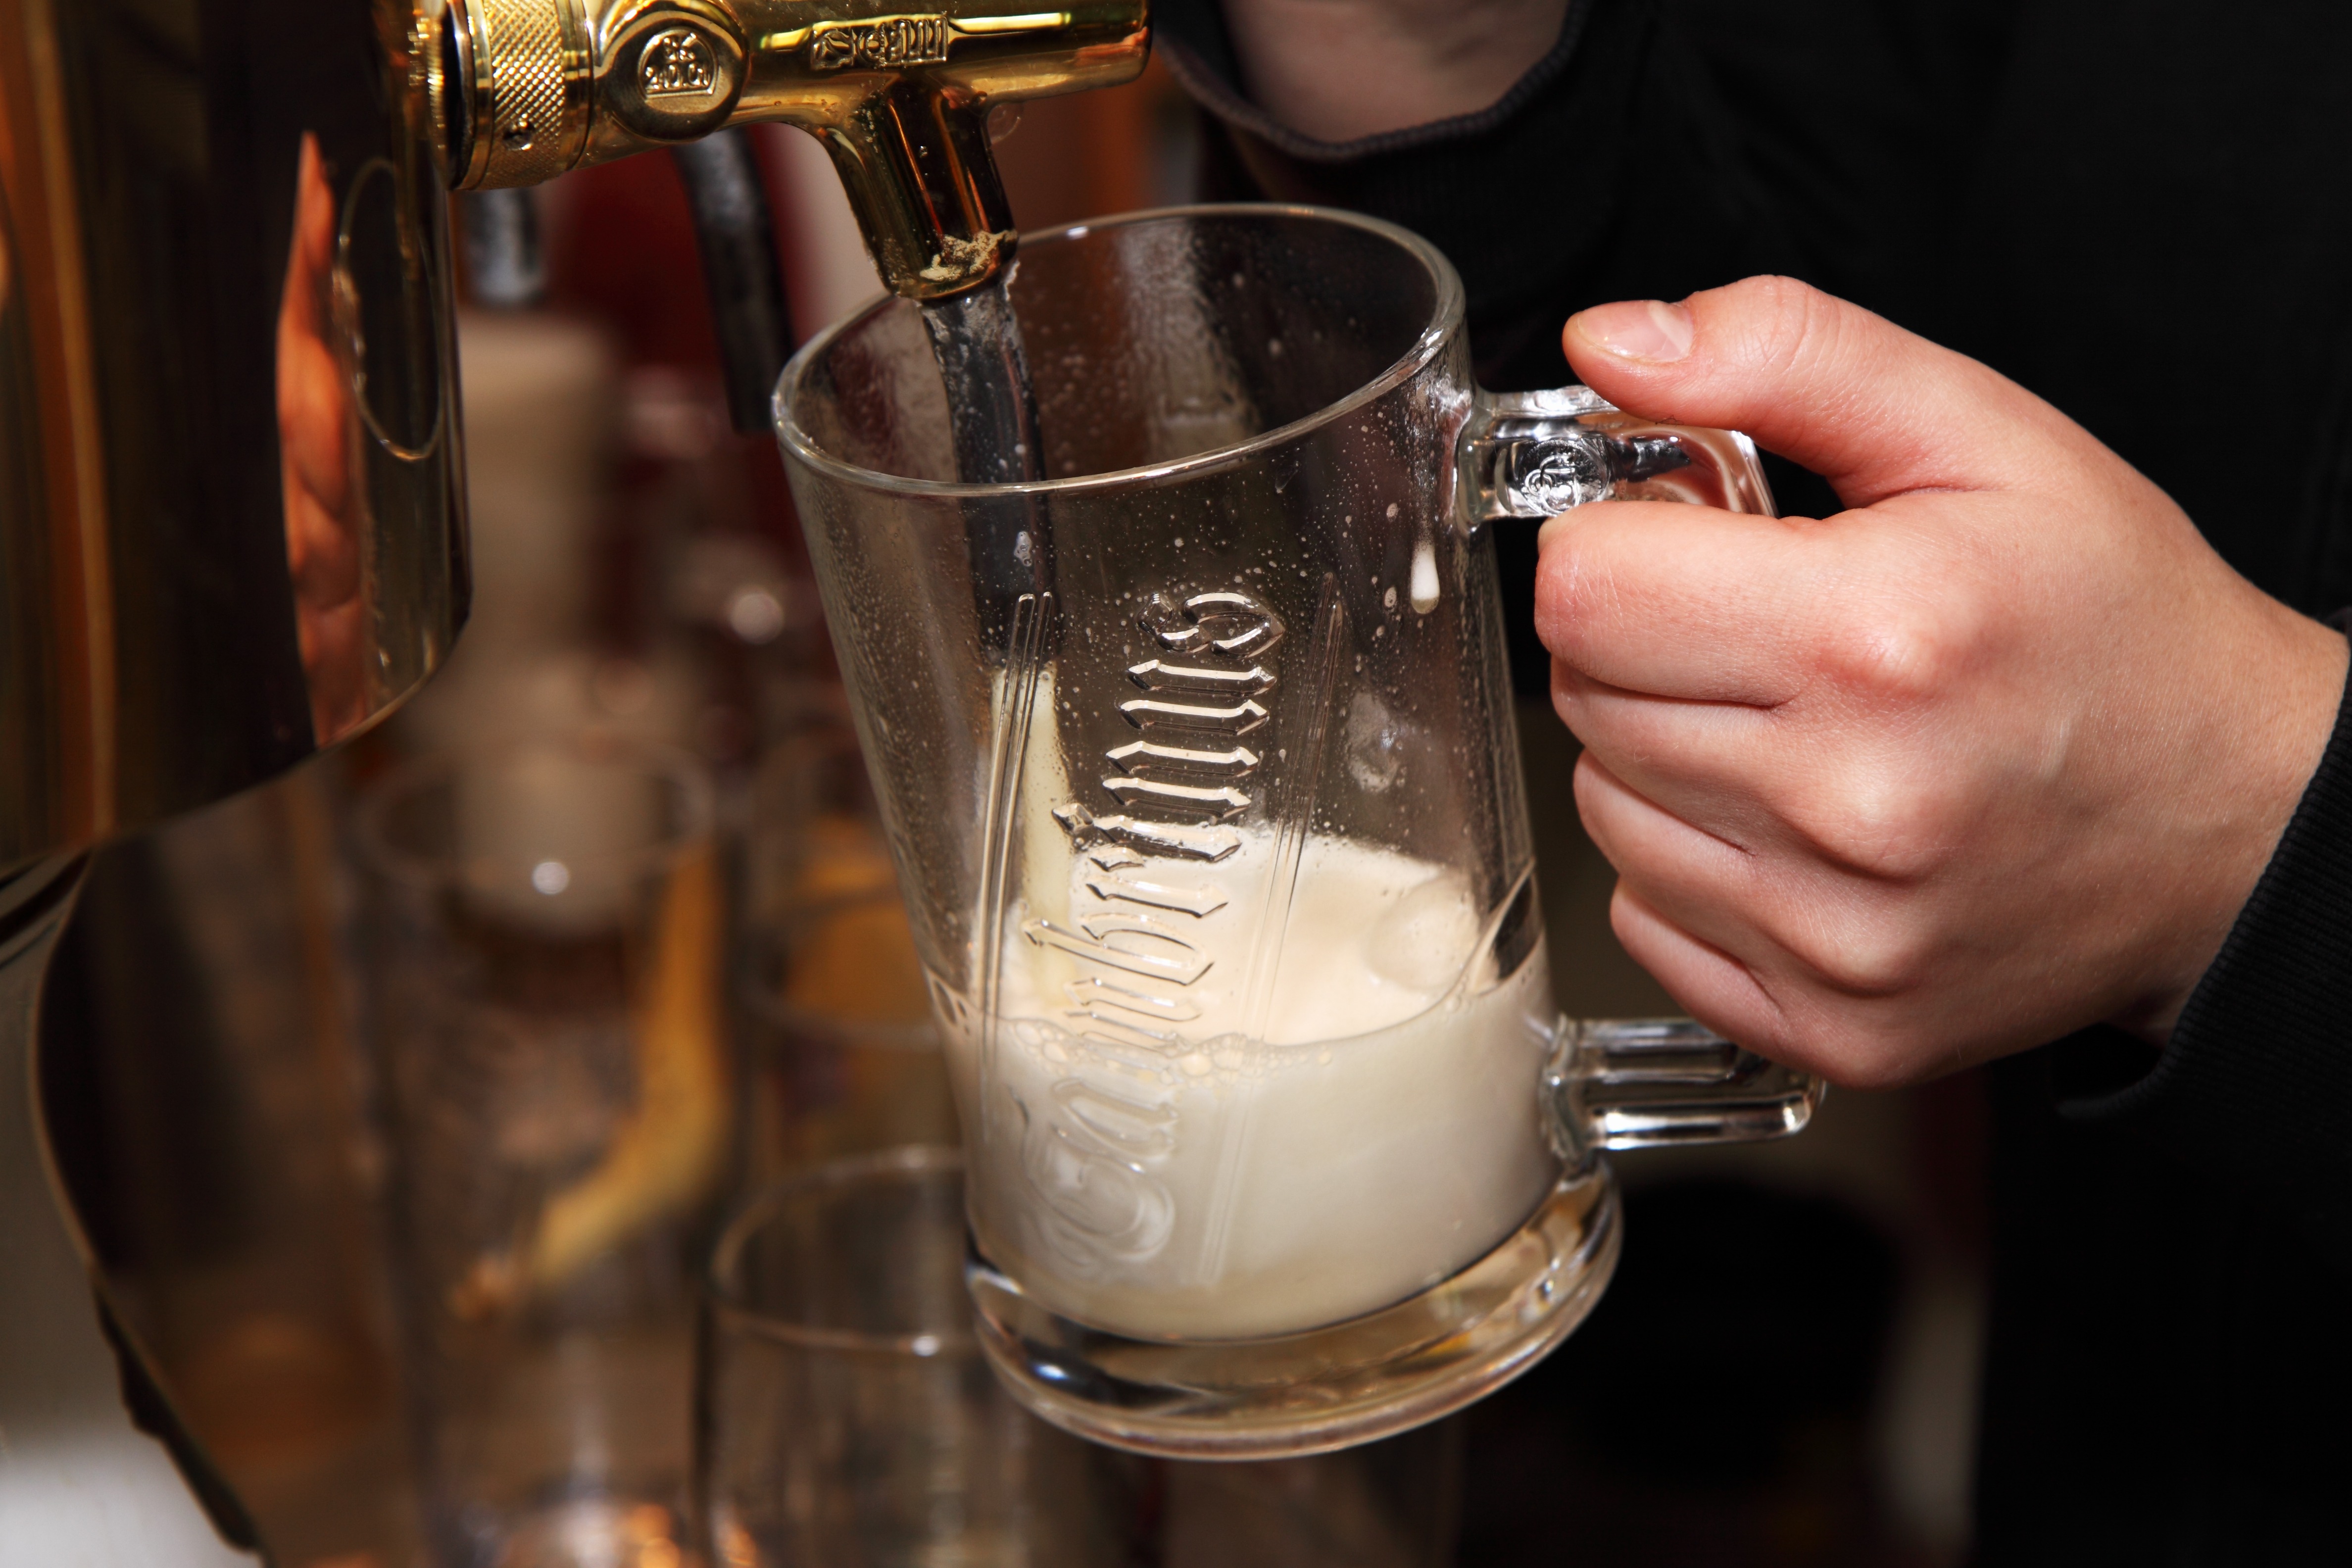 Ученые удивили: обнаружена неожиданная польза от питья пива по вечерам